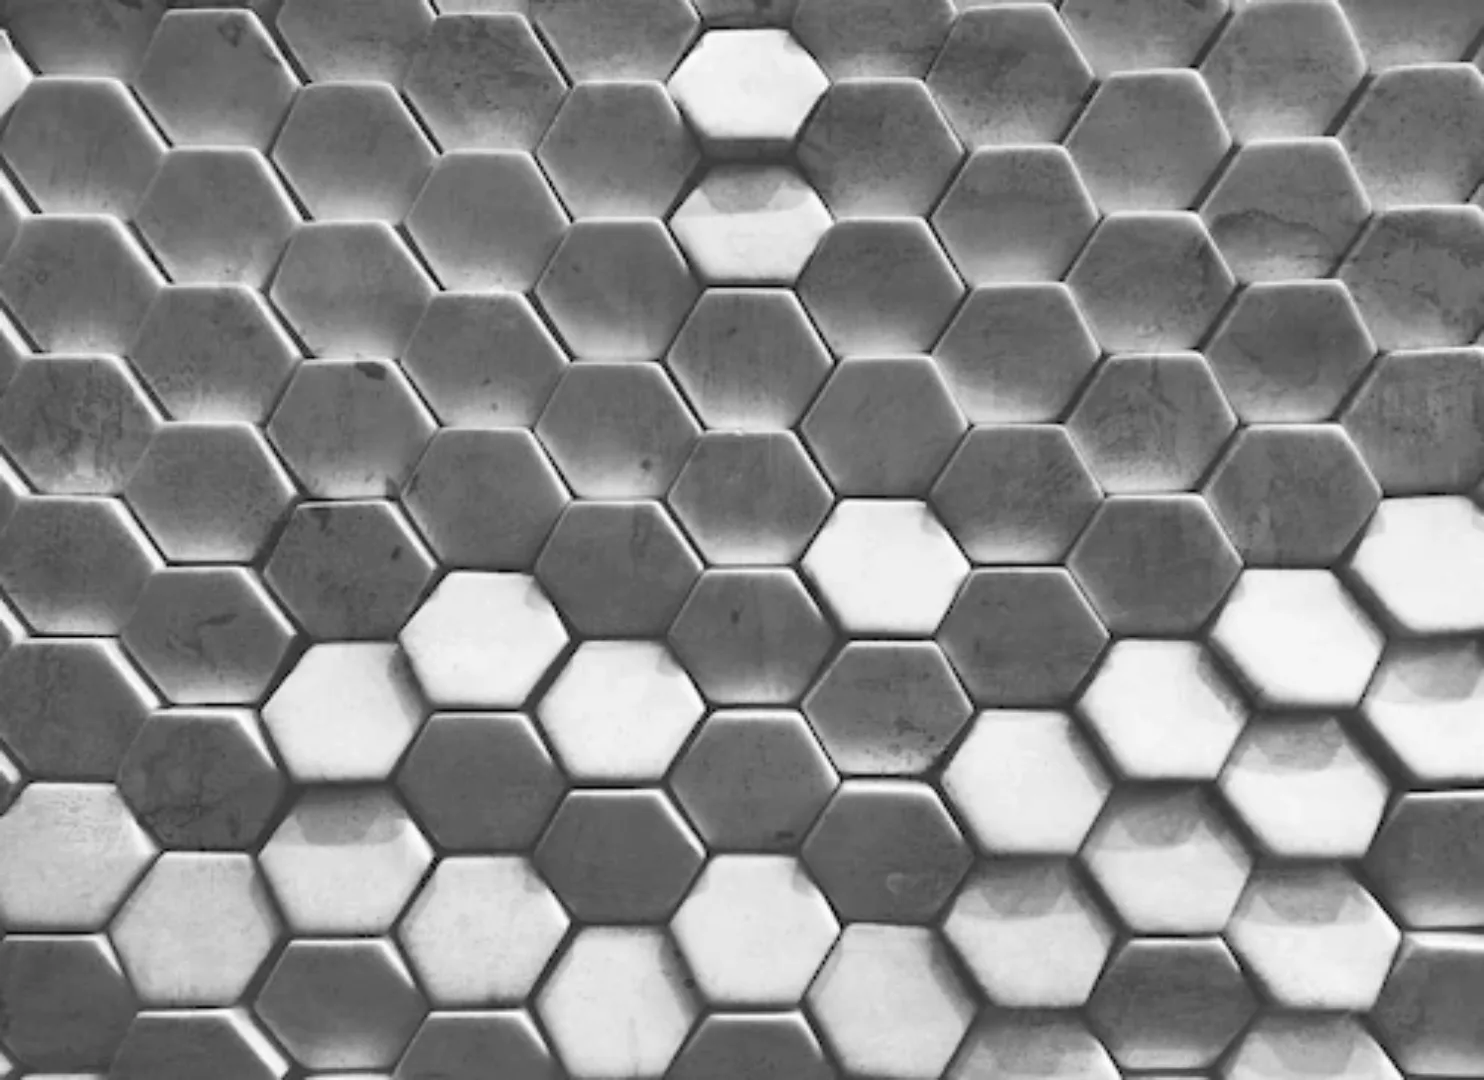 Fototapete Hexagon Wand Grau Weiß 3,50 m x 2,55 m FSC® günstig online kaufen